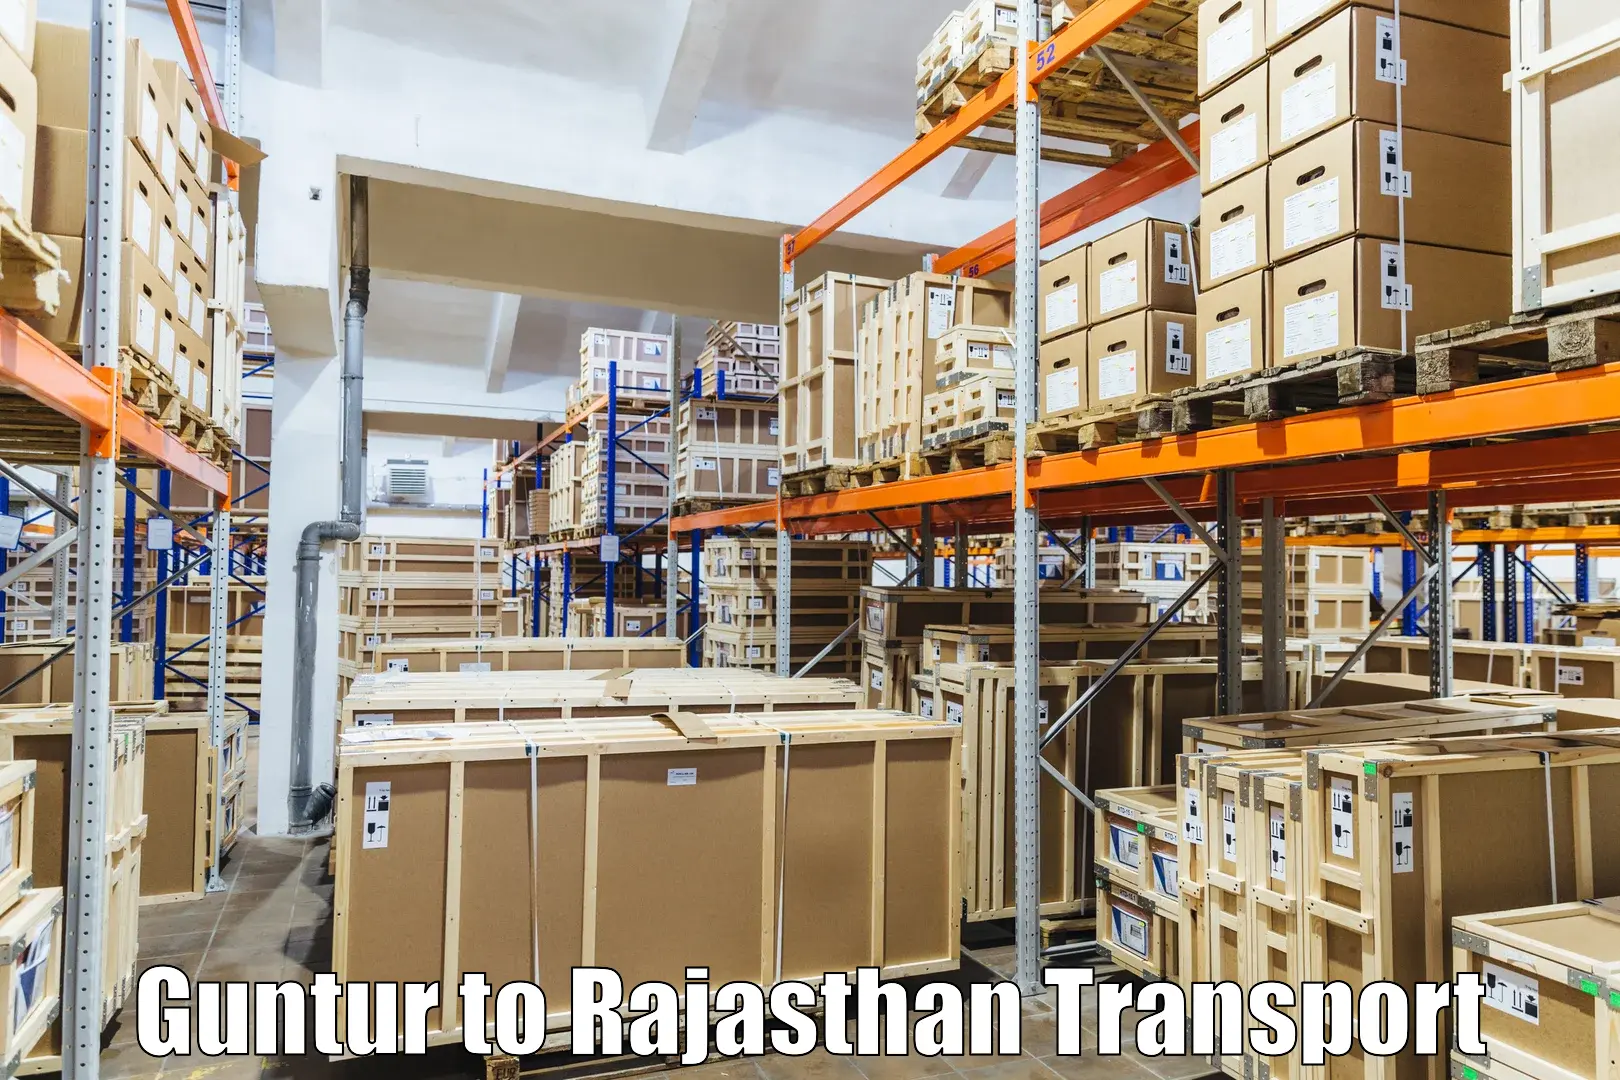 Furniture transport service Guntur to Sangaria